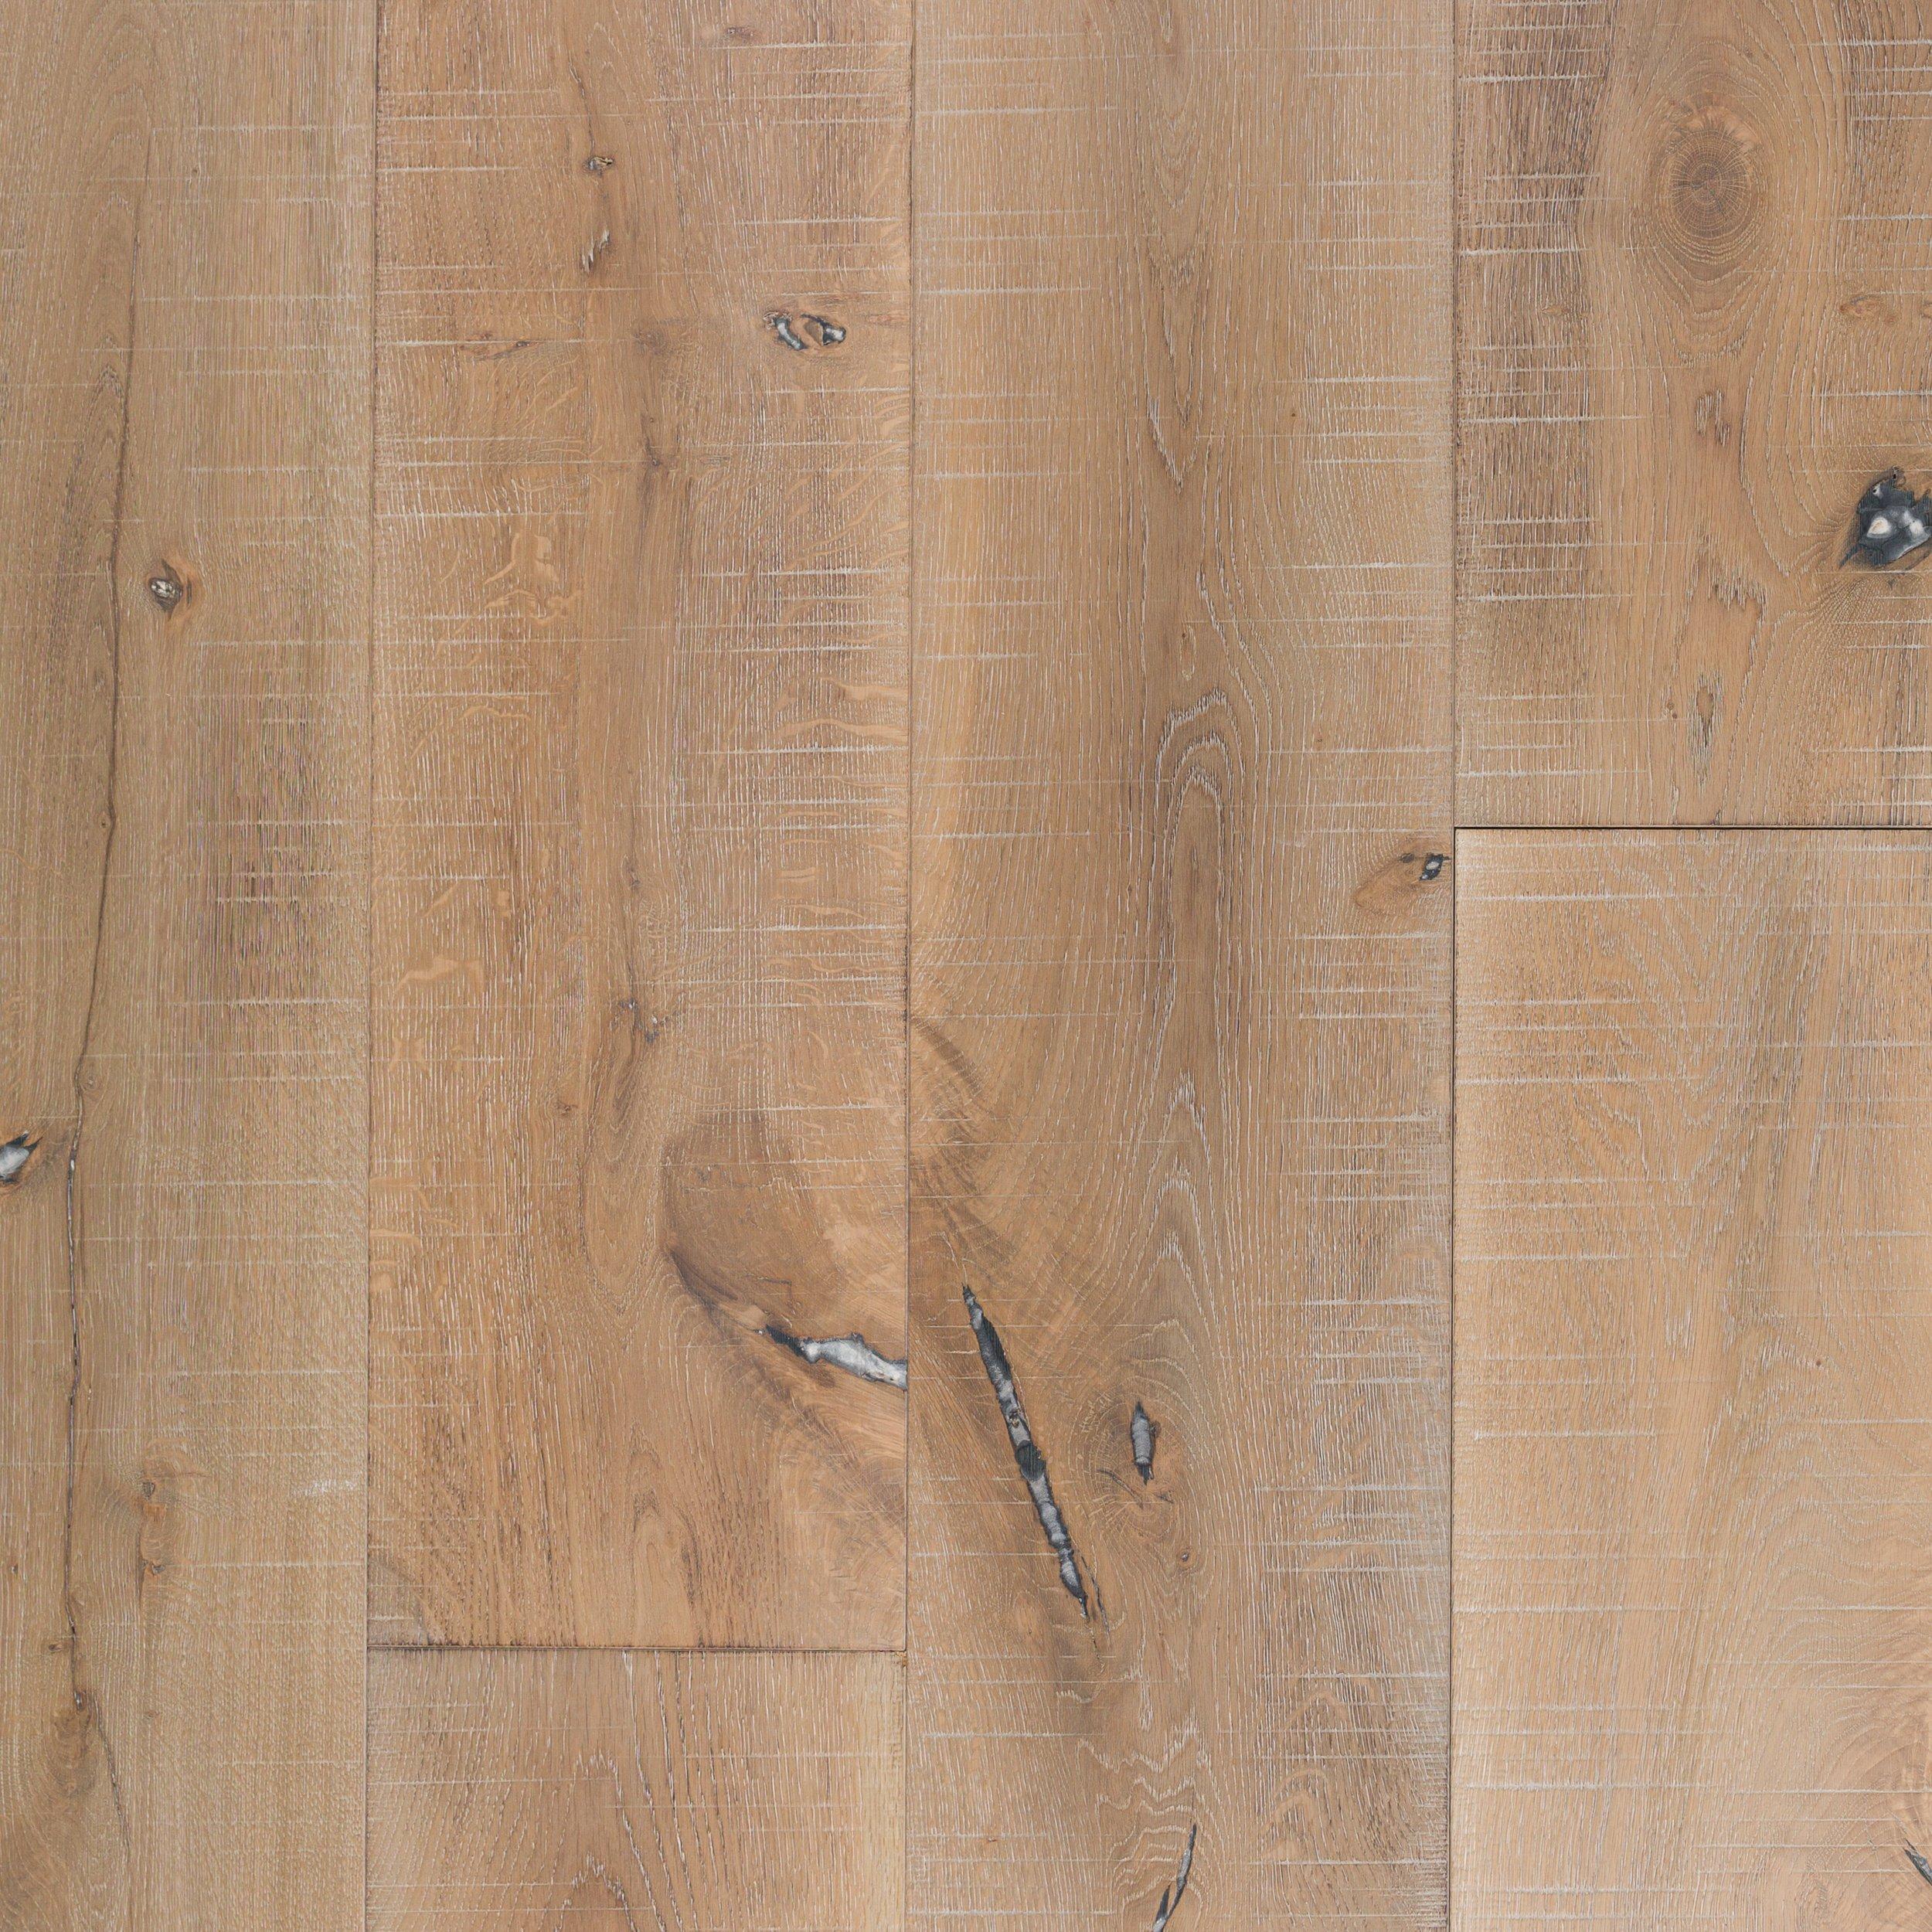 European Oak Rustic Distressed, Engineered Hardwood Flooring Jacksonville Fl